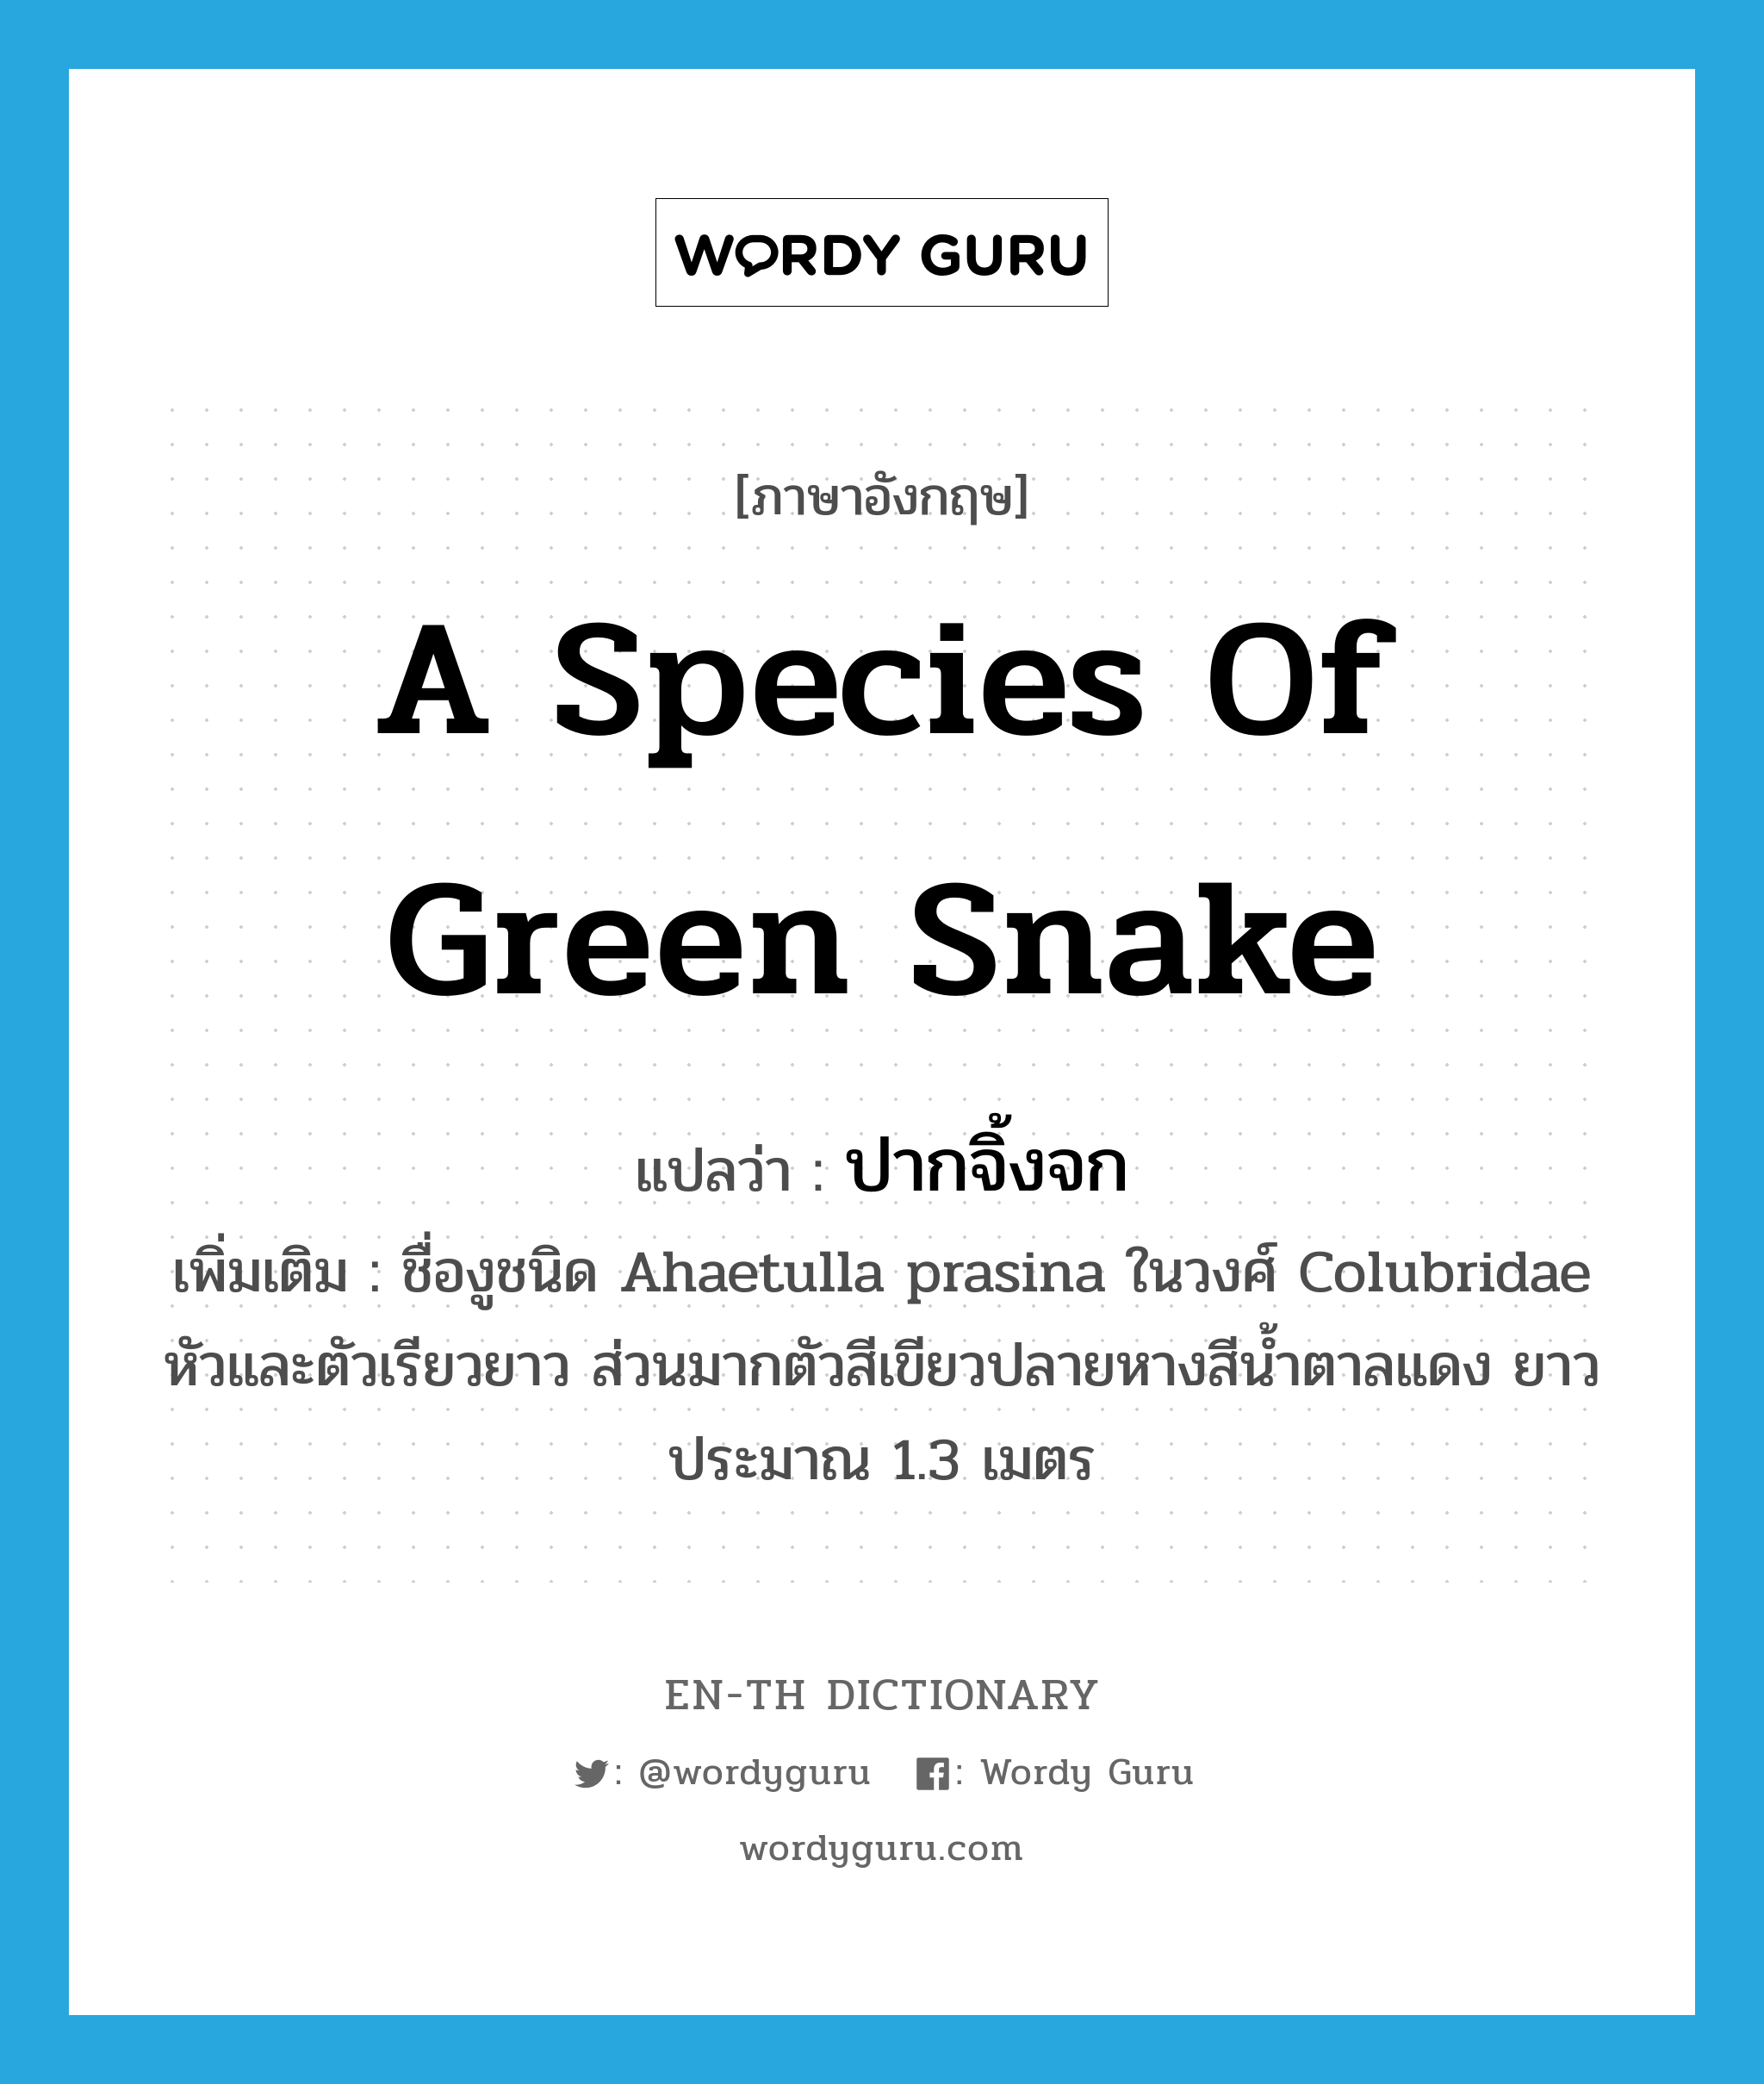 ปากจิ้งจก ภาษาอังกฤษ?, คำศัพท์ภาษาอังกฤษ ปากจิ้งจก แปลว่า a species of green snake ประเภท N เพิ่มเติม ชื่องูชนิด Ahaetulla prasina ในวงศ์ Colubridae หัวและตัวเรียวยาว ส่วนมากตัวสีเขียวปลายหางสีน้ำตาลแดง ยาวประมาณ 1.3 เมตร หมวด N